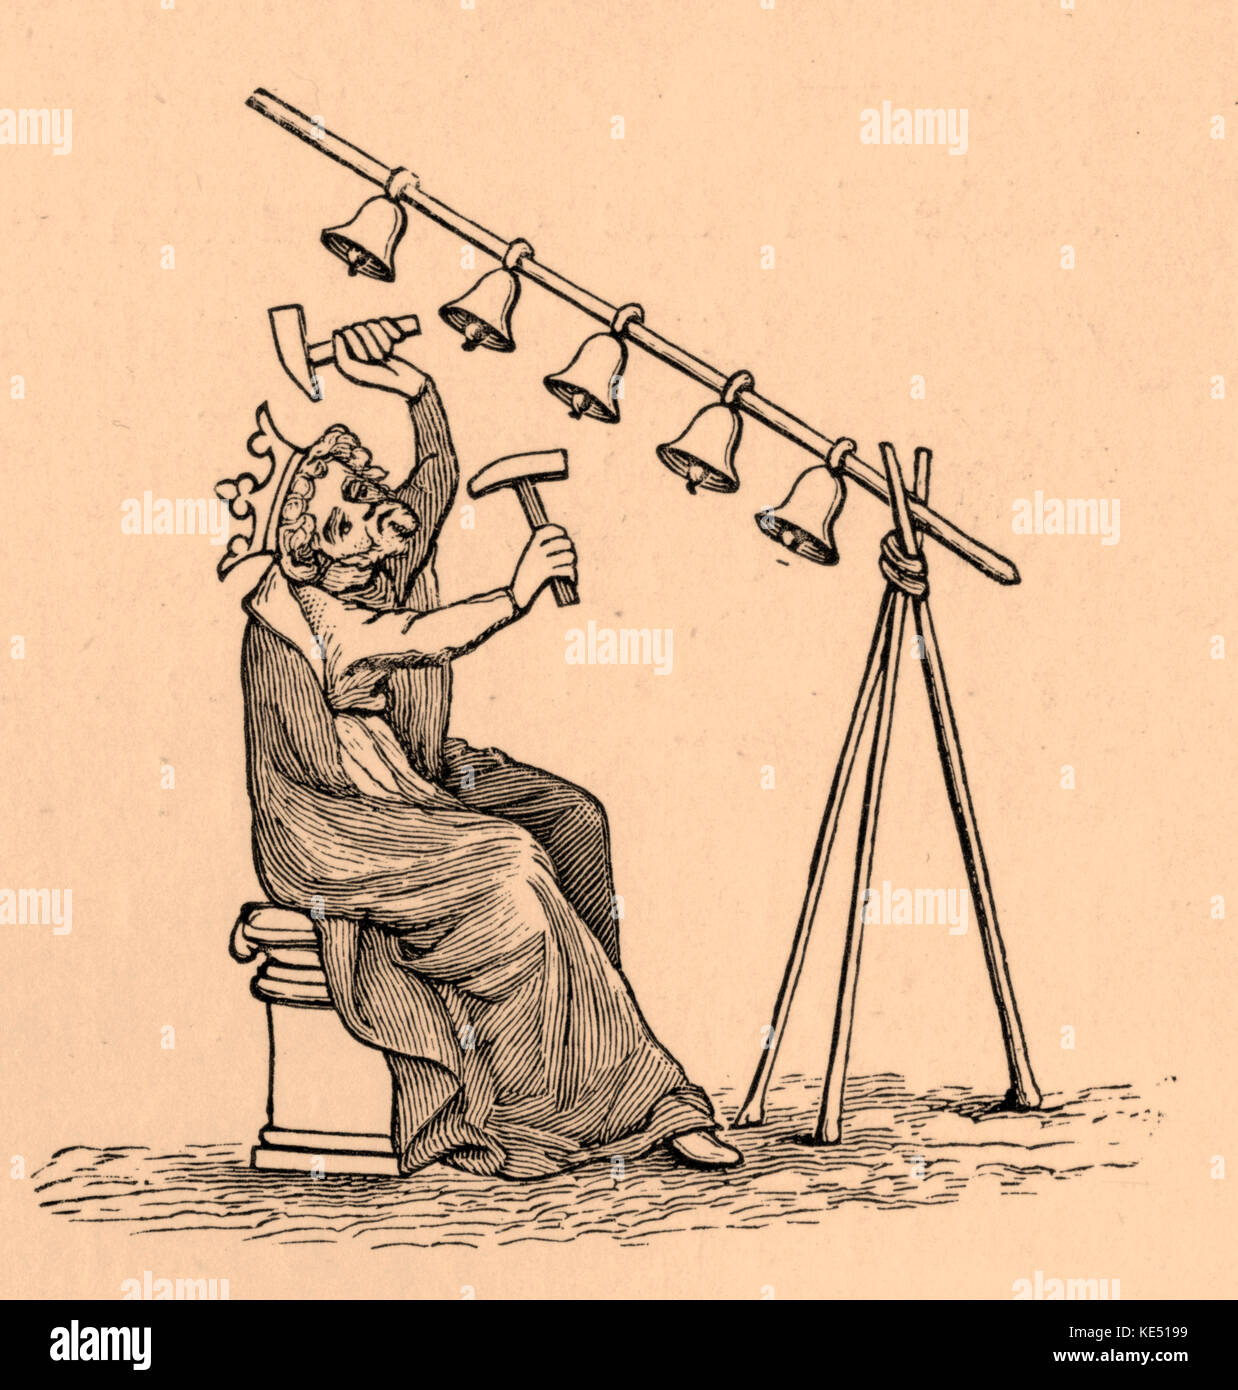 Le roi David jouant sur cloches - début du xive siècle Banque D'Images